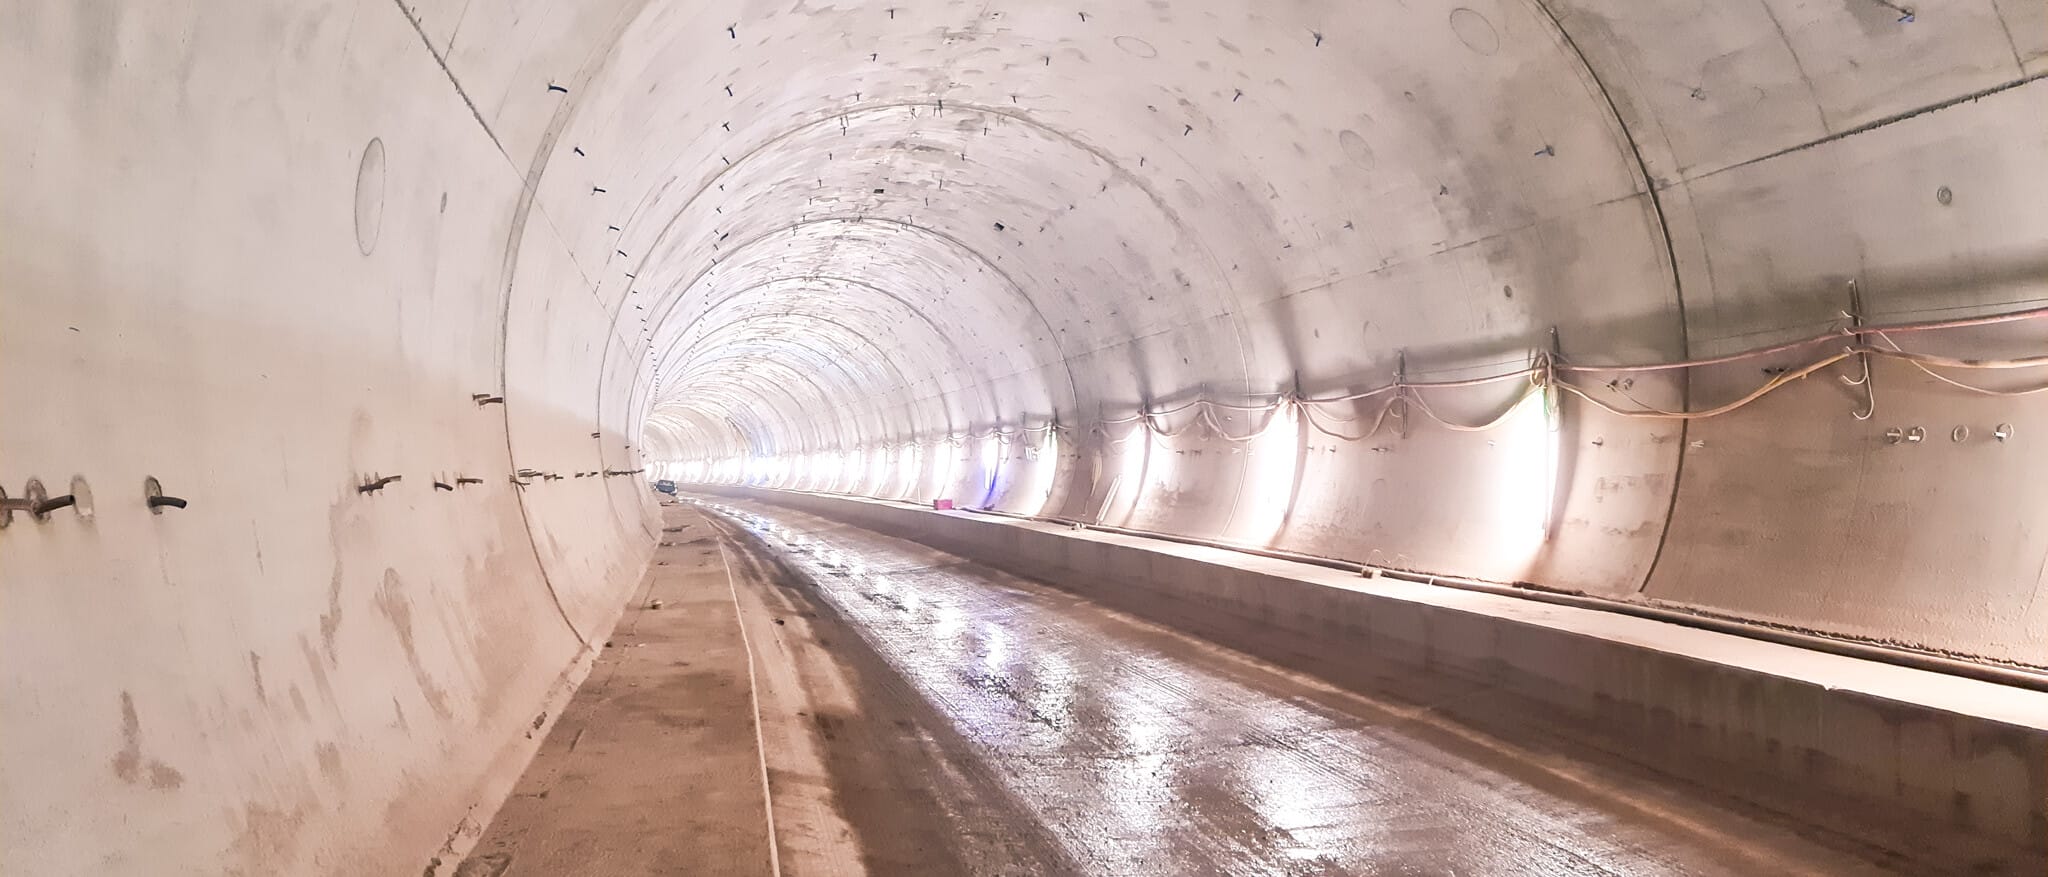 Blick in eine im Rohbau befindliche Tunnelröhre mit Baustellenbeleuchtung